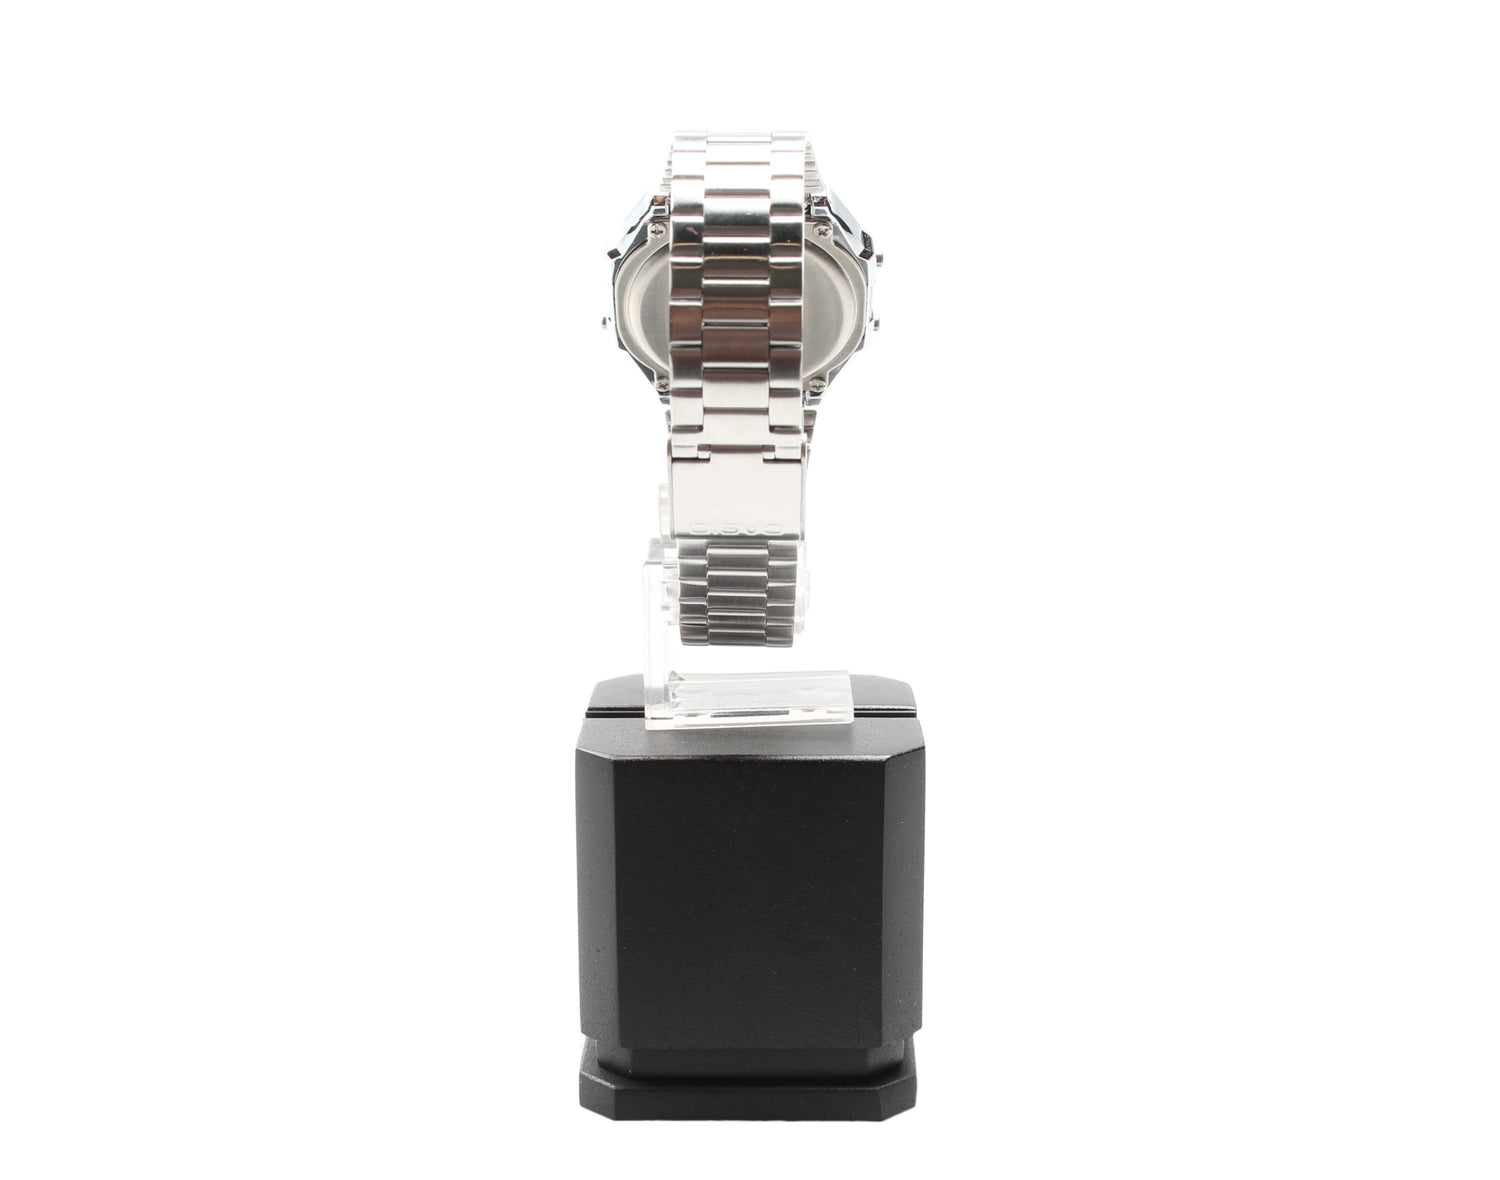 Casio A168WEM Vintage Mirror Finish Digital Stainless Steel Men's Watch